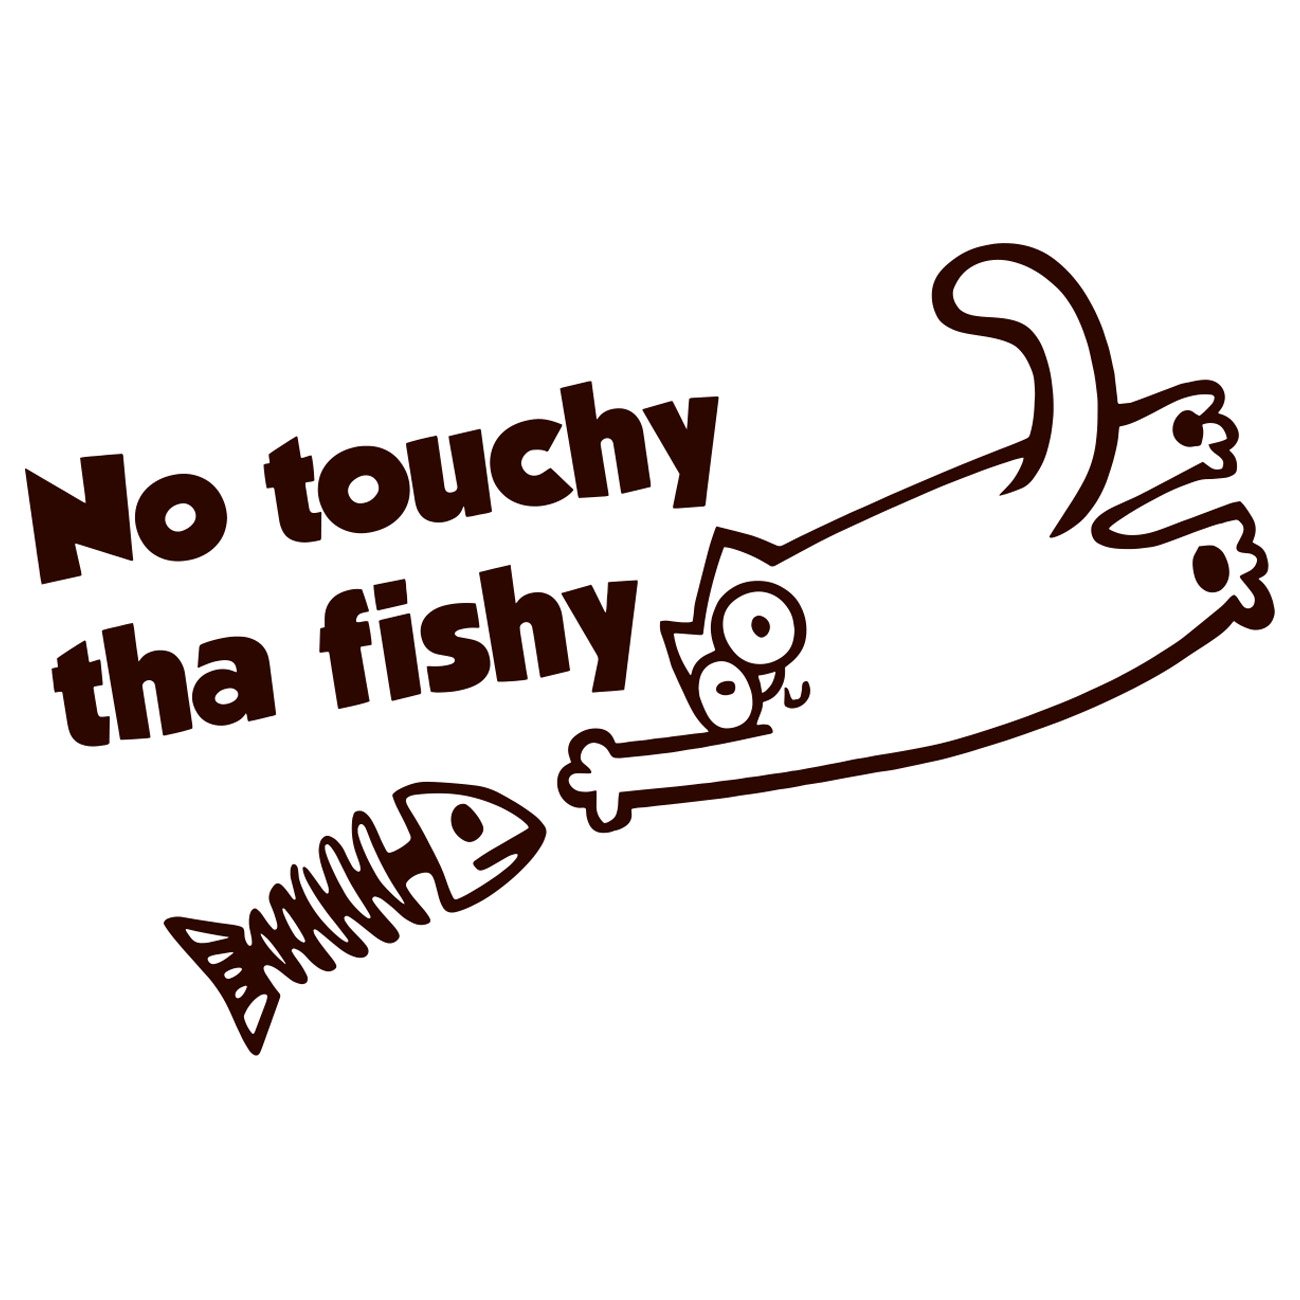 No touchy tha fishy